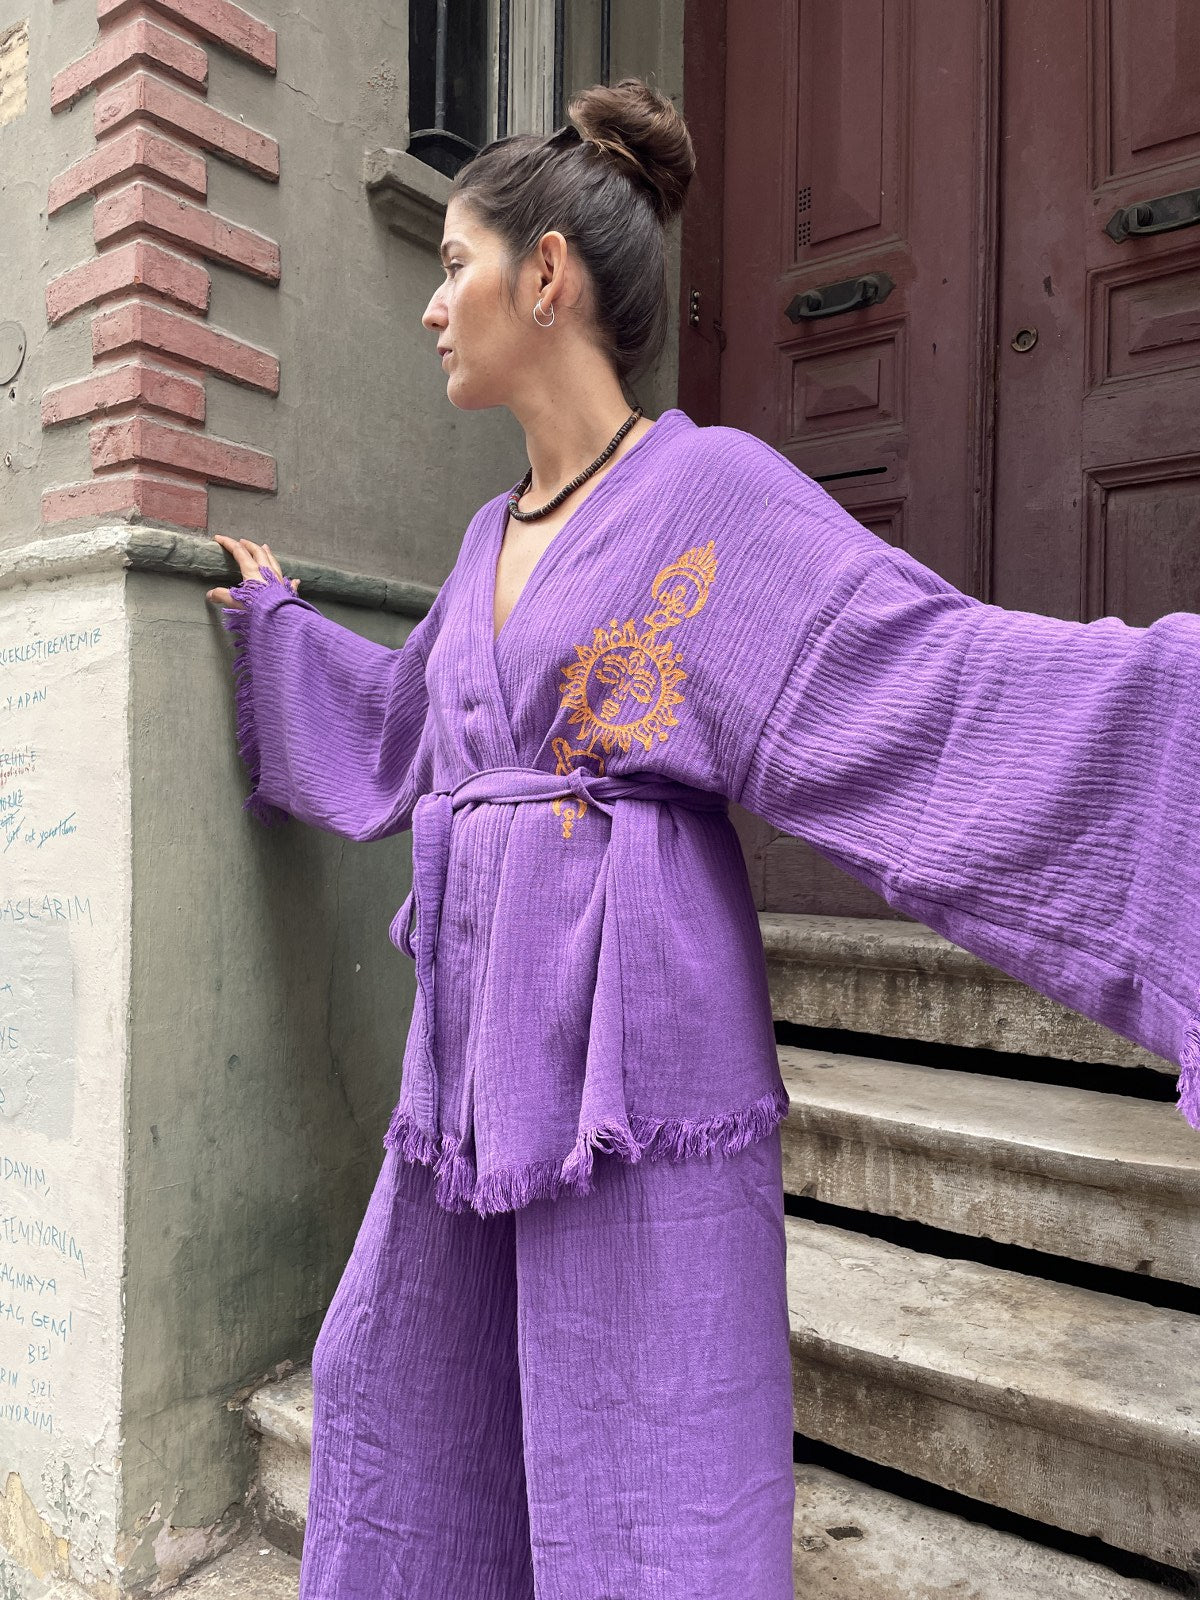 Mor Turuncu Bohem Kadın Yoga Doğal Kumaş Kimono Takım Yoga Takımı